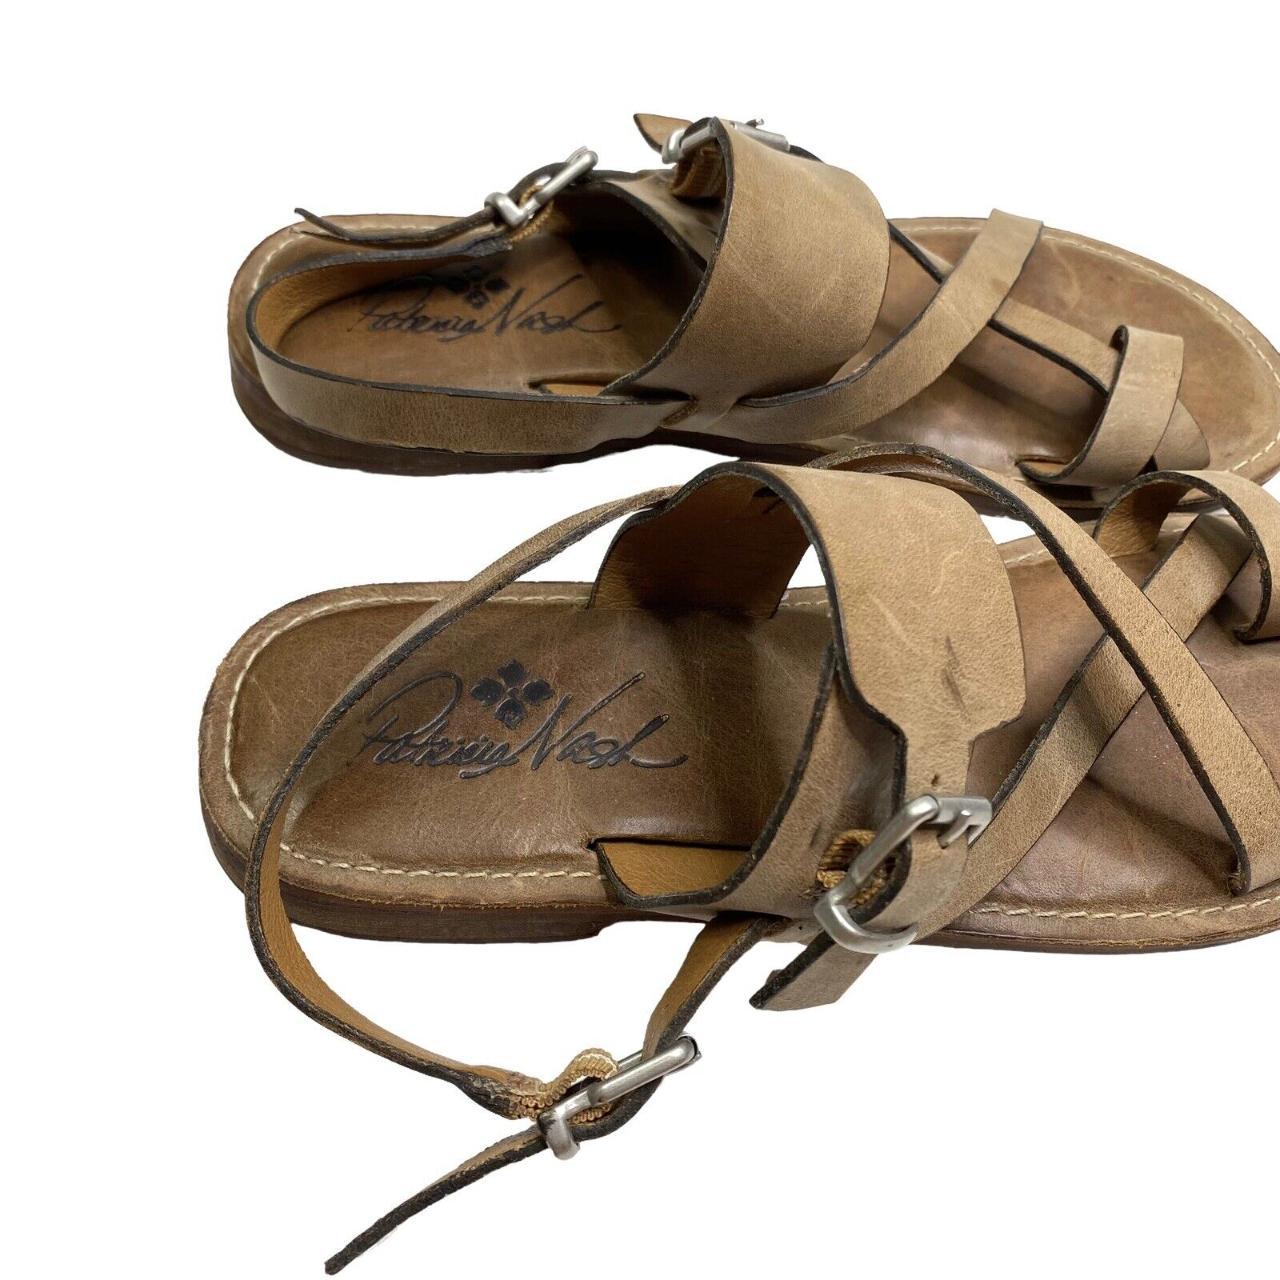 Patricia Nash Womens Fidella Sandals Strappy Toe... - Depop